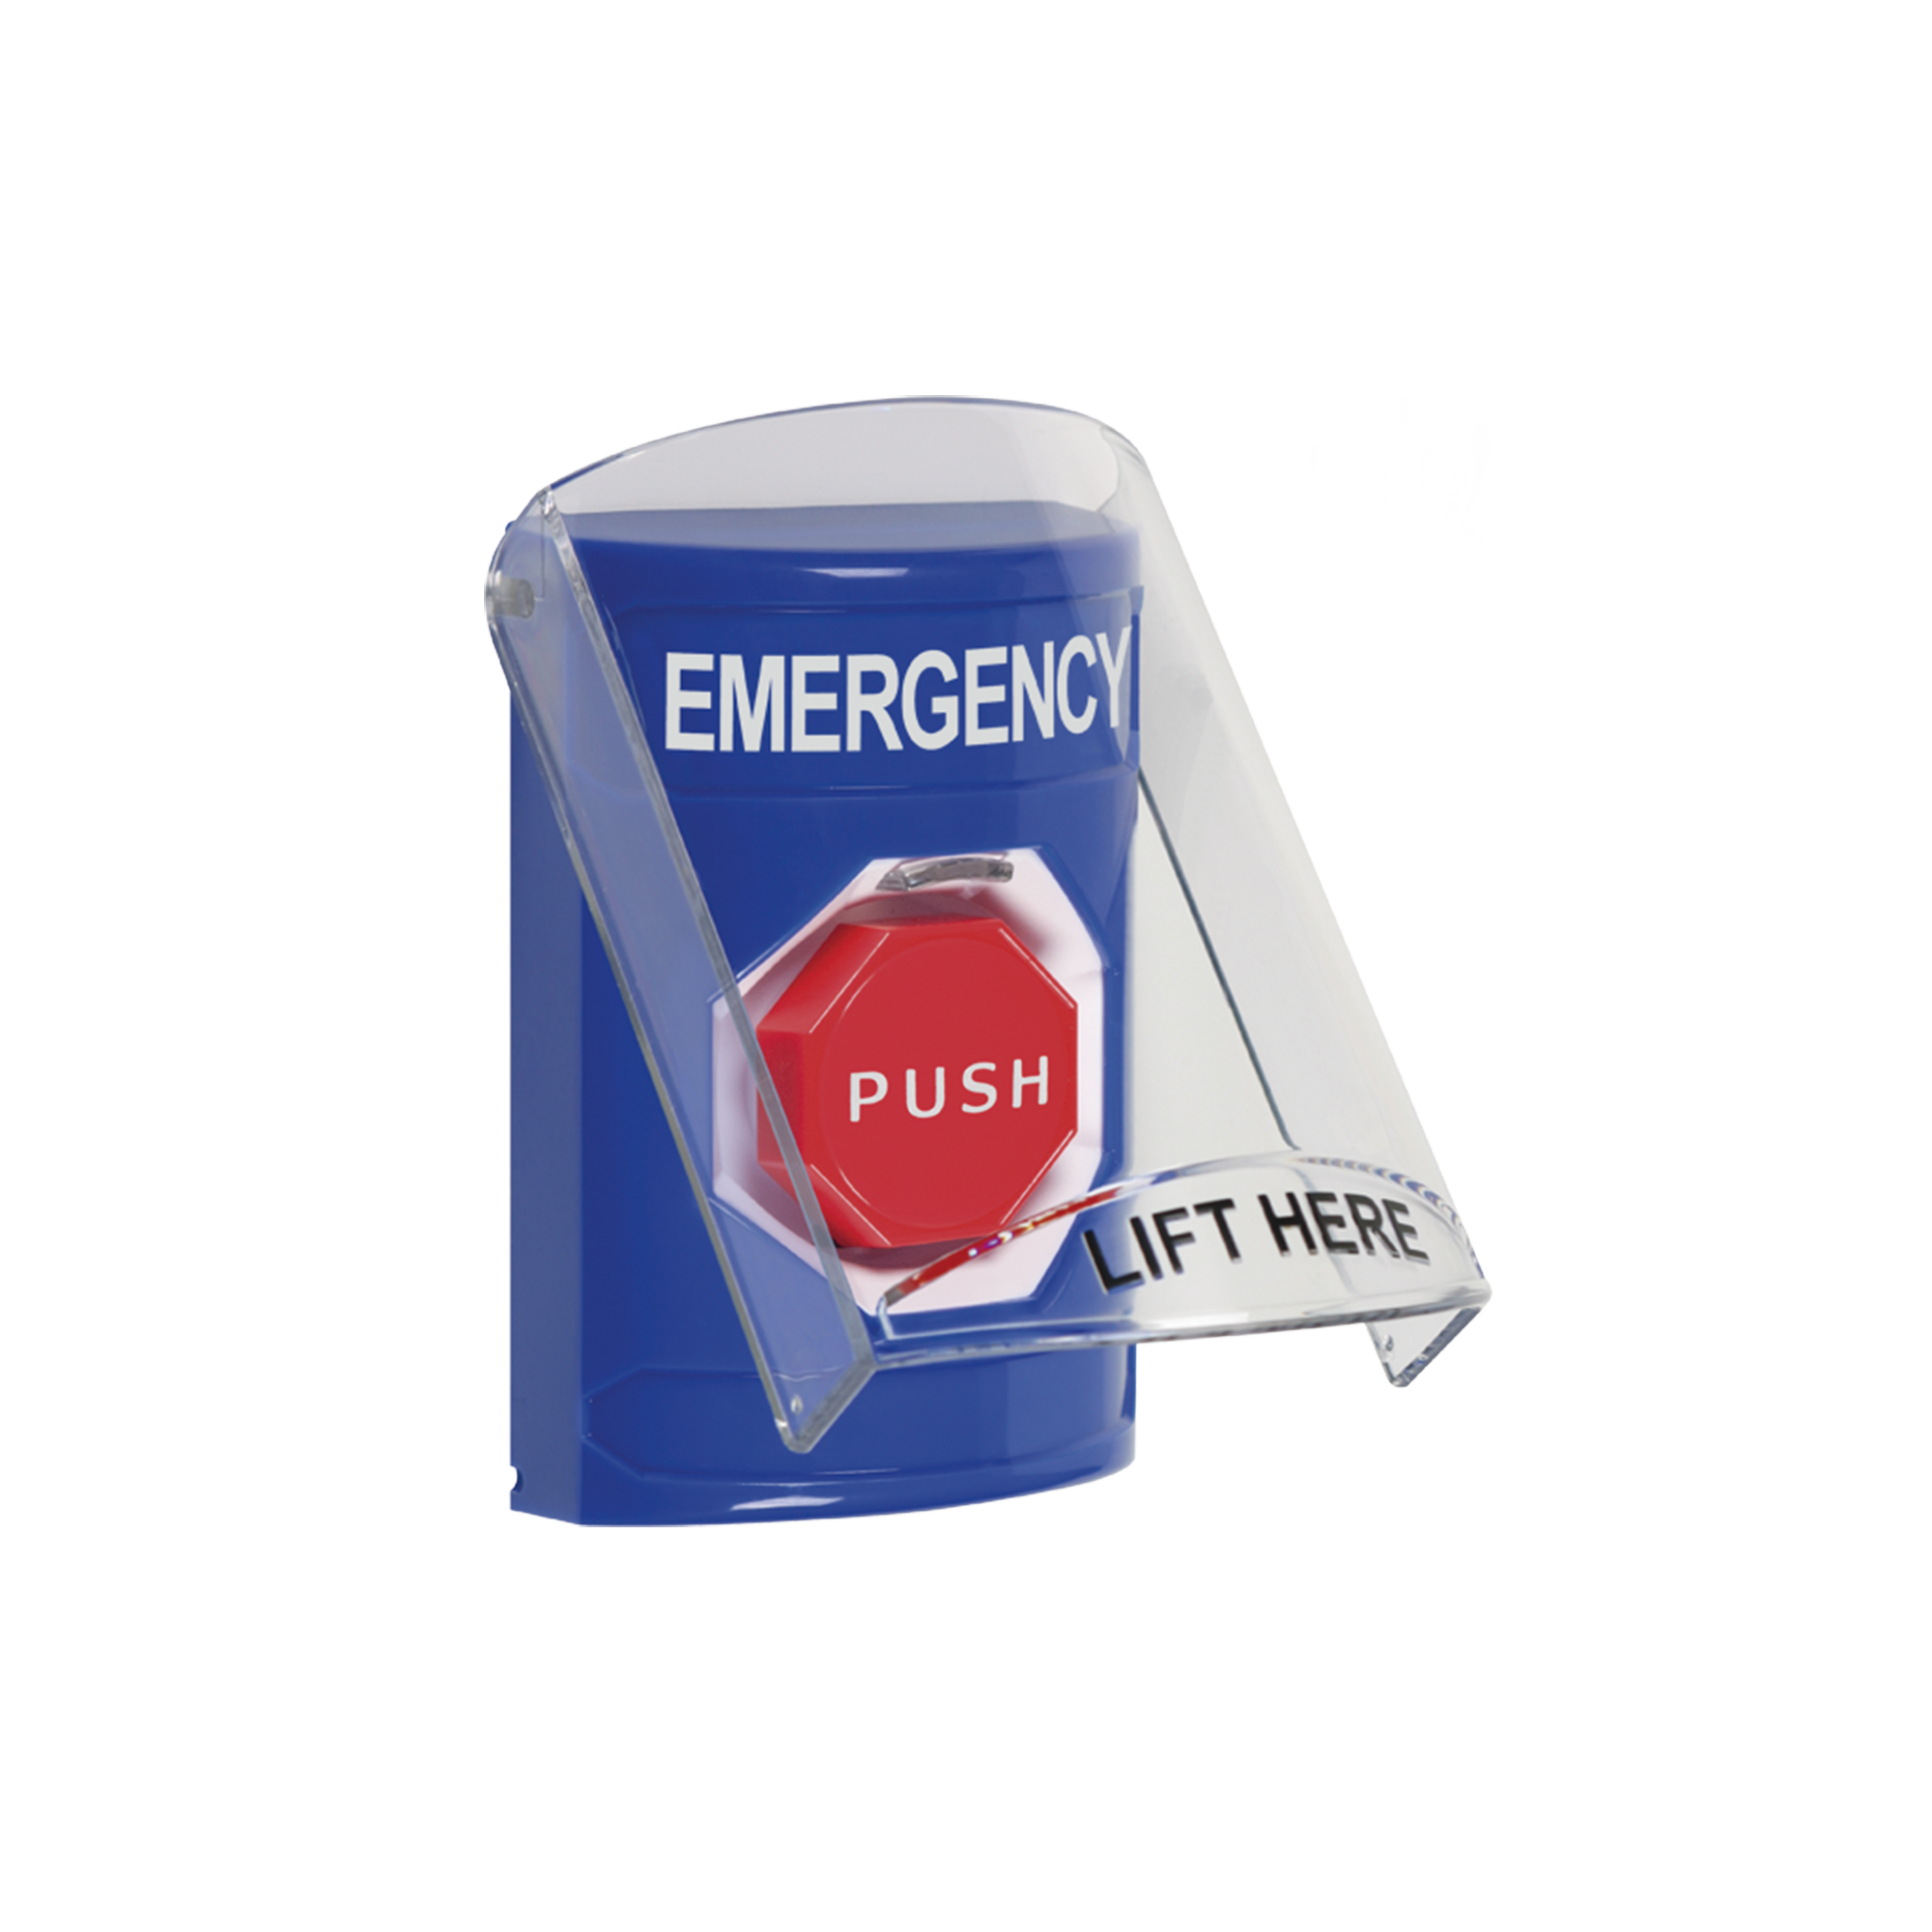 Botón de Emergencia en Ingles con Tapa Protectora de Policarbonato Súper Resistente, Restablecimiento con Llave y Sirena